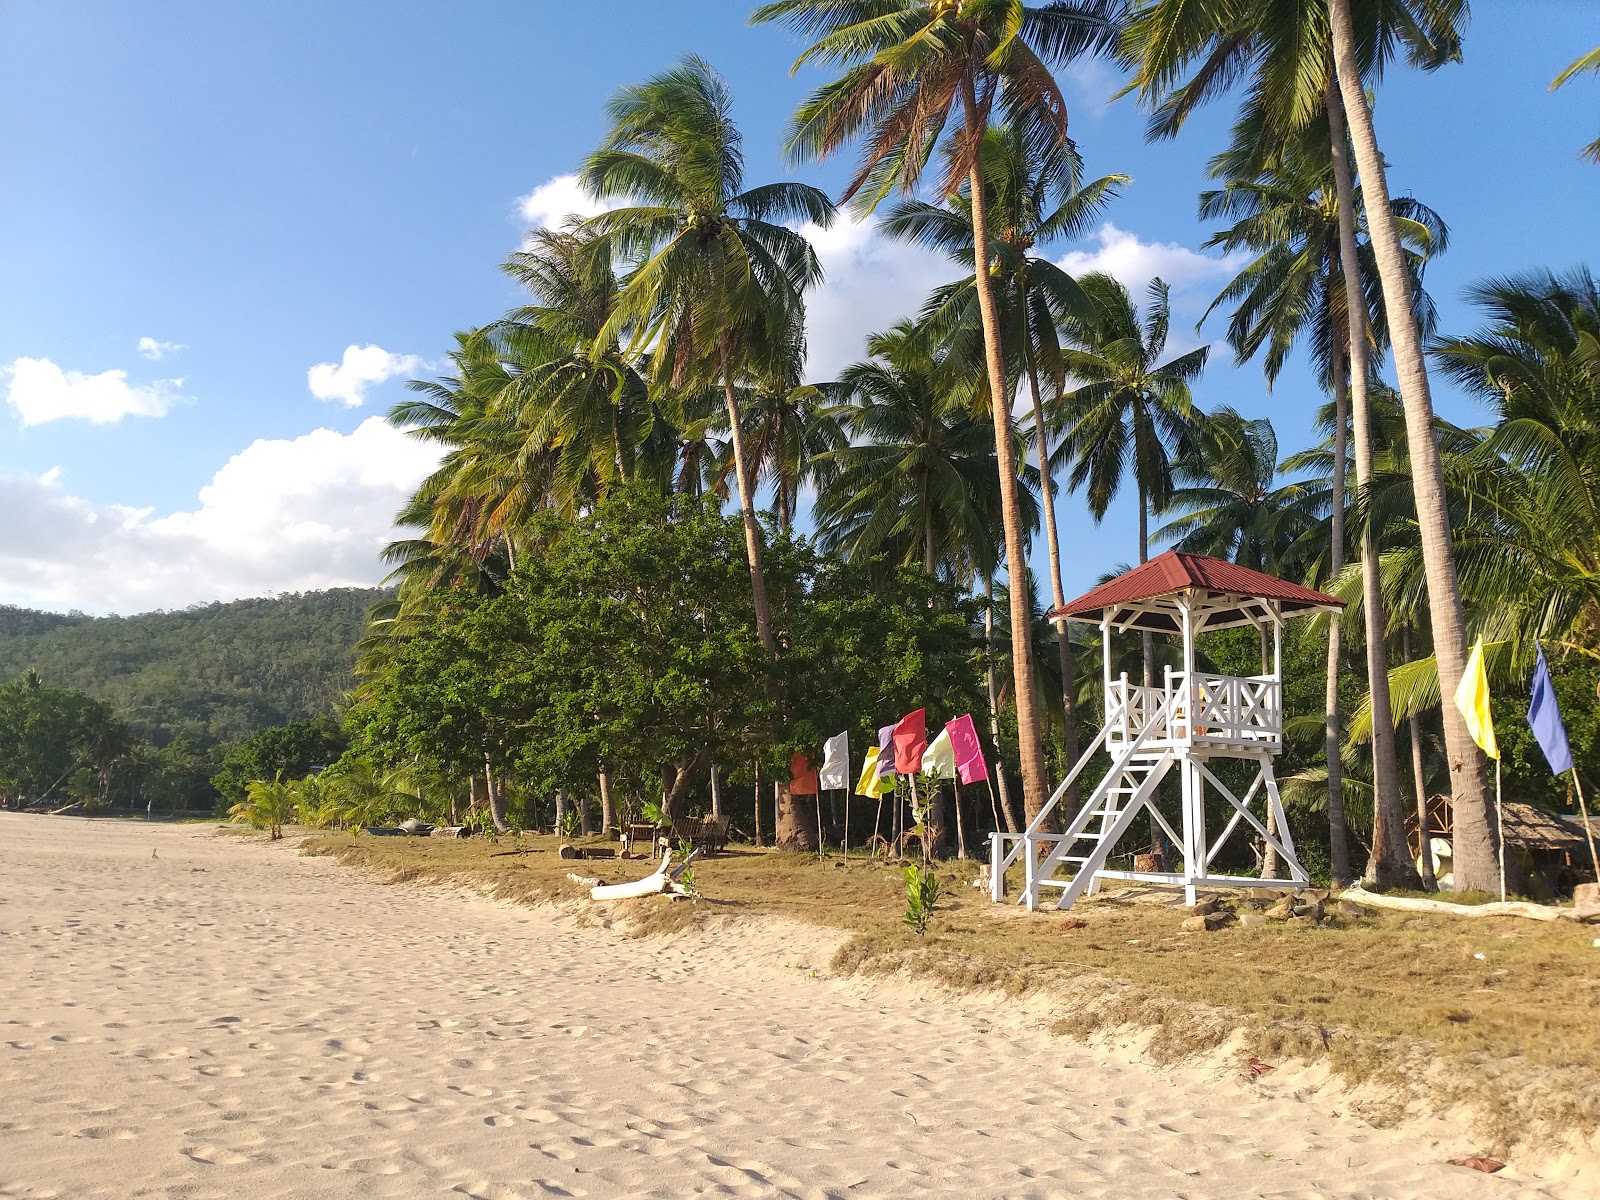 Fotografija Talaudyong Beach priljubljeno mesto med poznavalci sprostitve